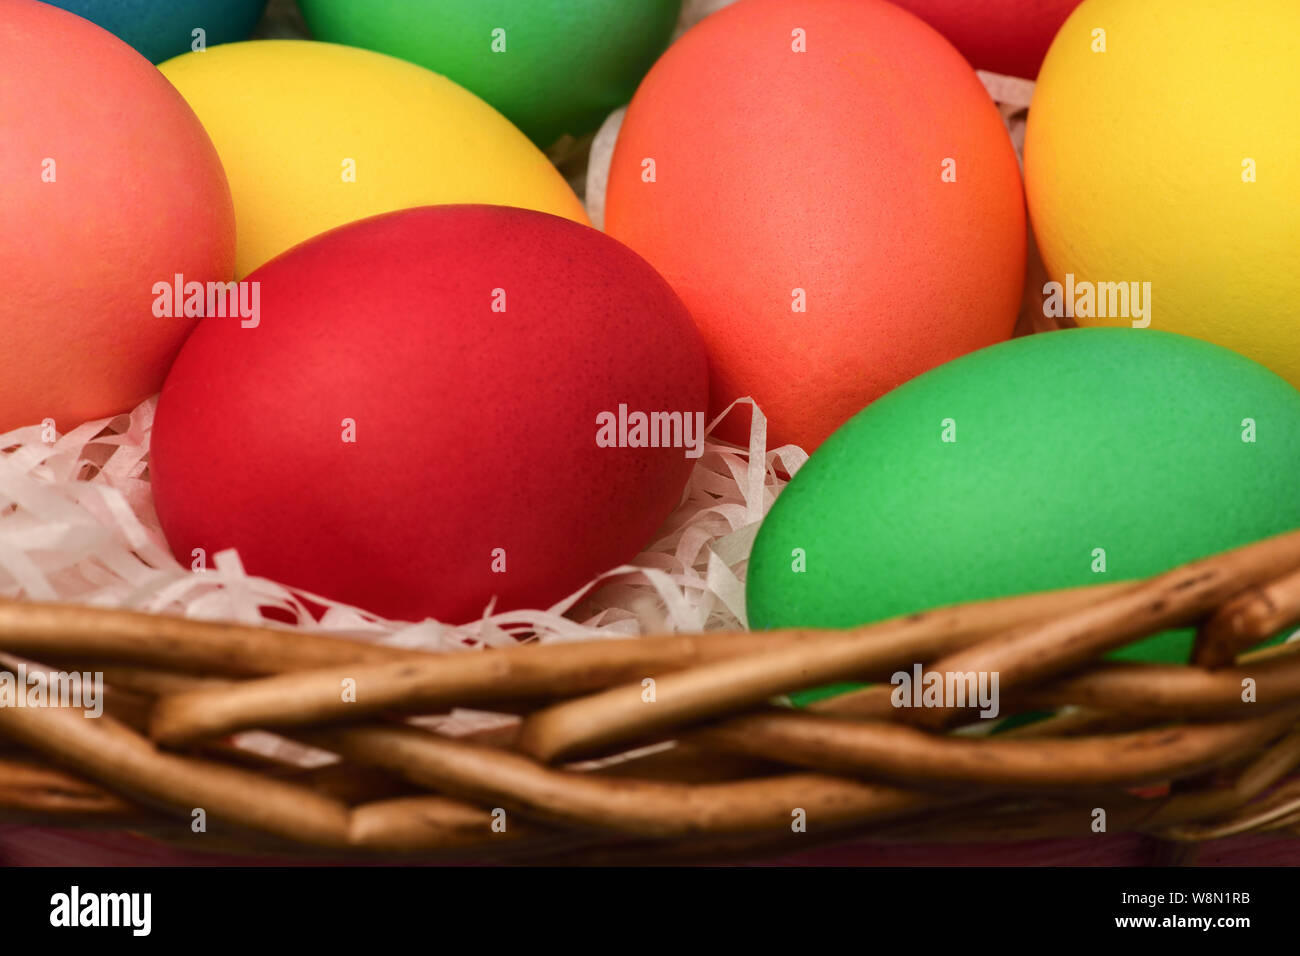 Grandes huevos de Pascua de colores diferentes que se encuentran en una cesta de mimbre. Fotografía horizontal Foto de stock